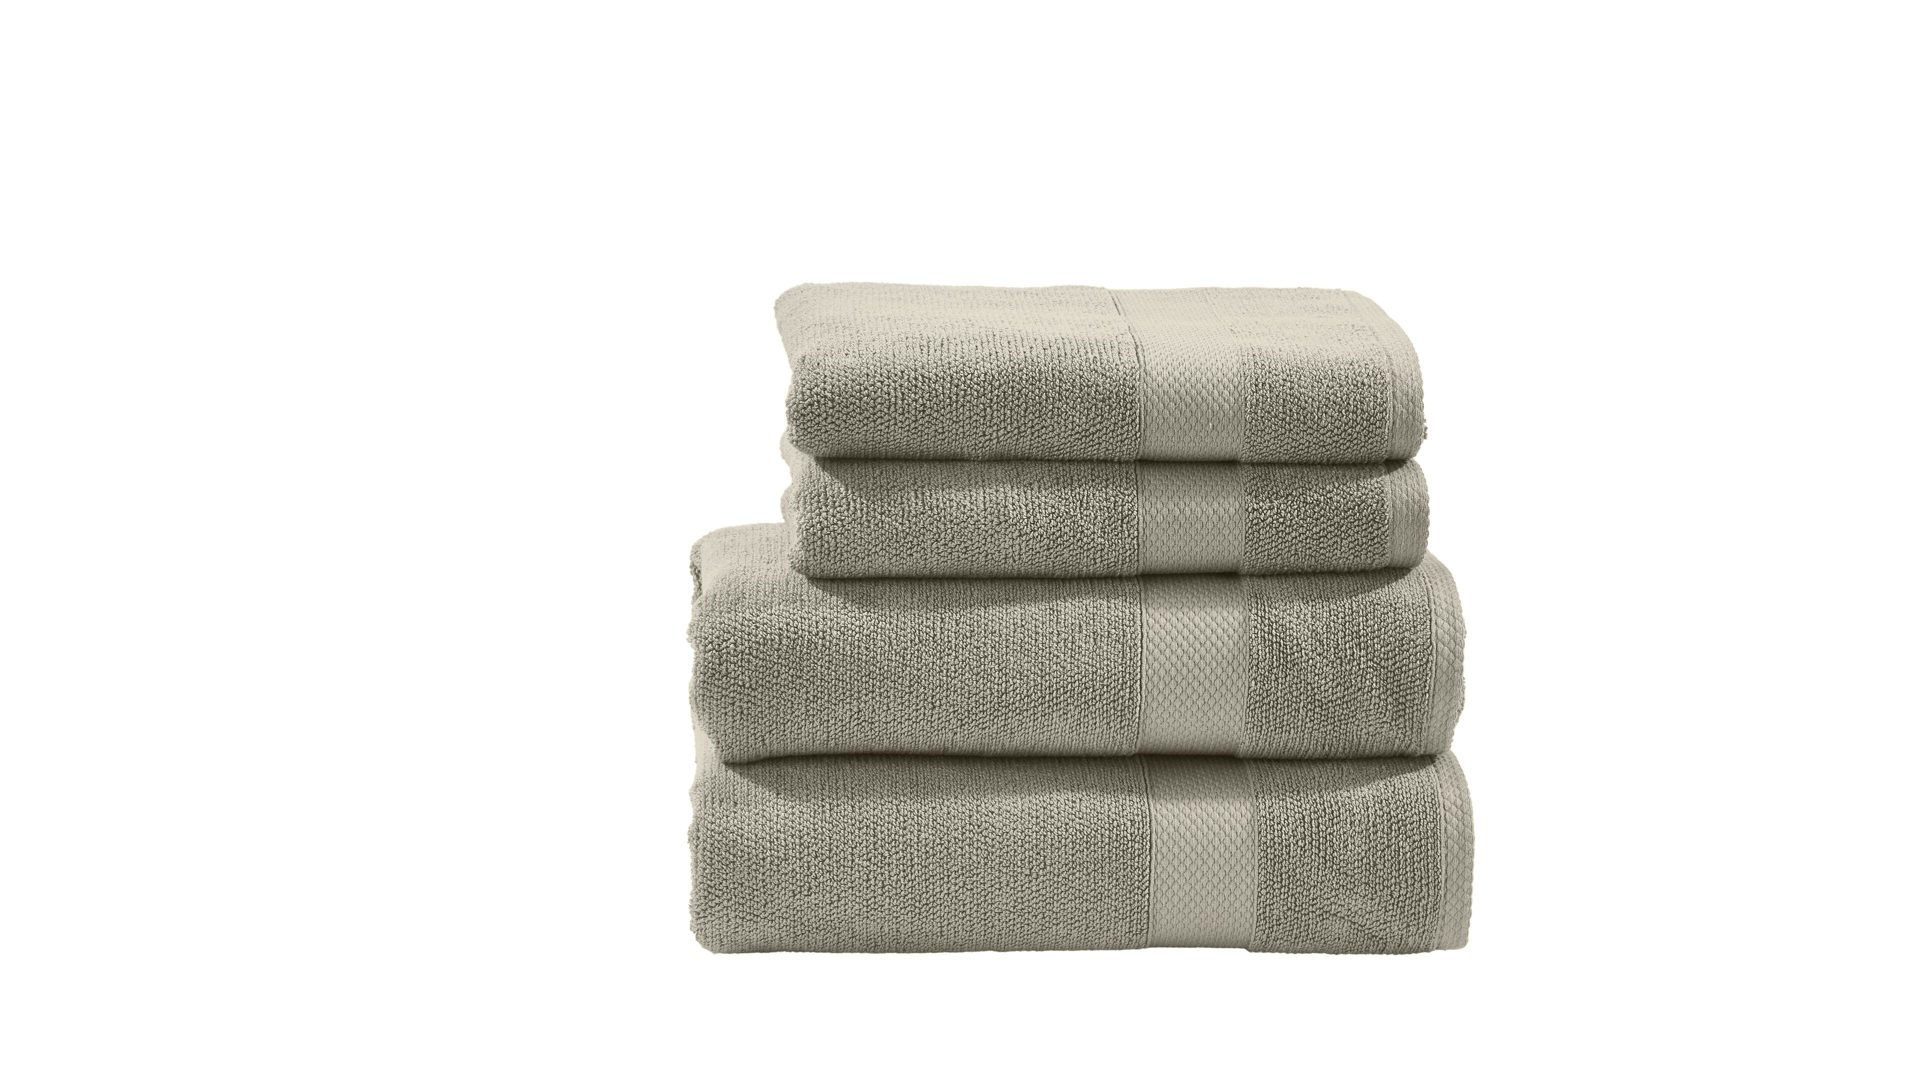 Handtuch-Set Done.® be different aus Stoff in Beige DONE.® Handtuch-Set Deluxe - Heimtextilien taupefarbene Baumwolle – vierteilig